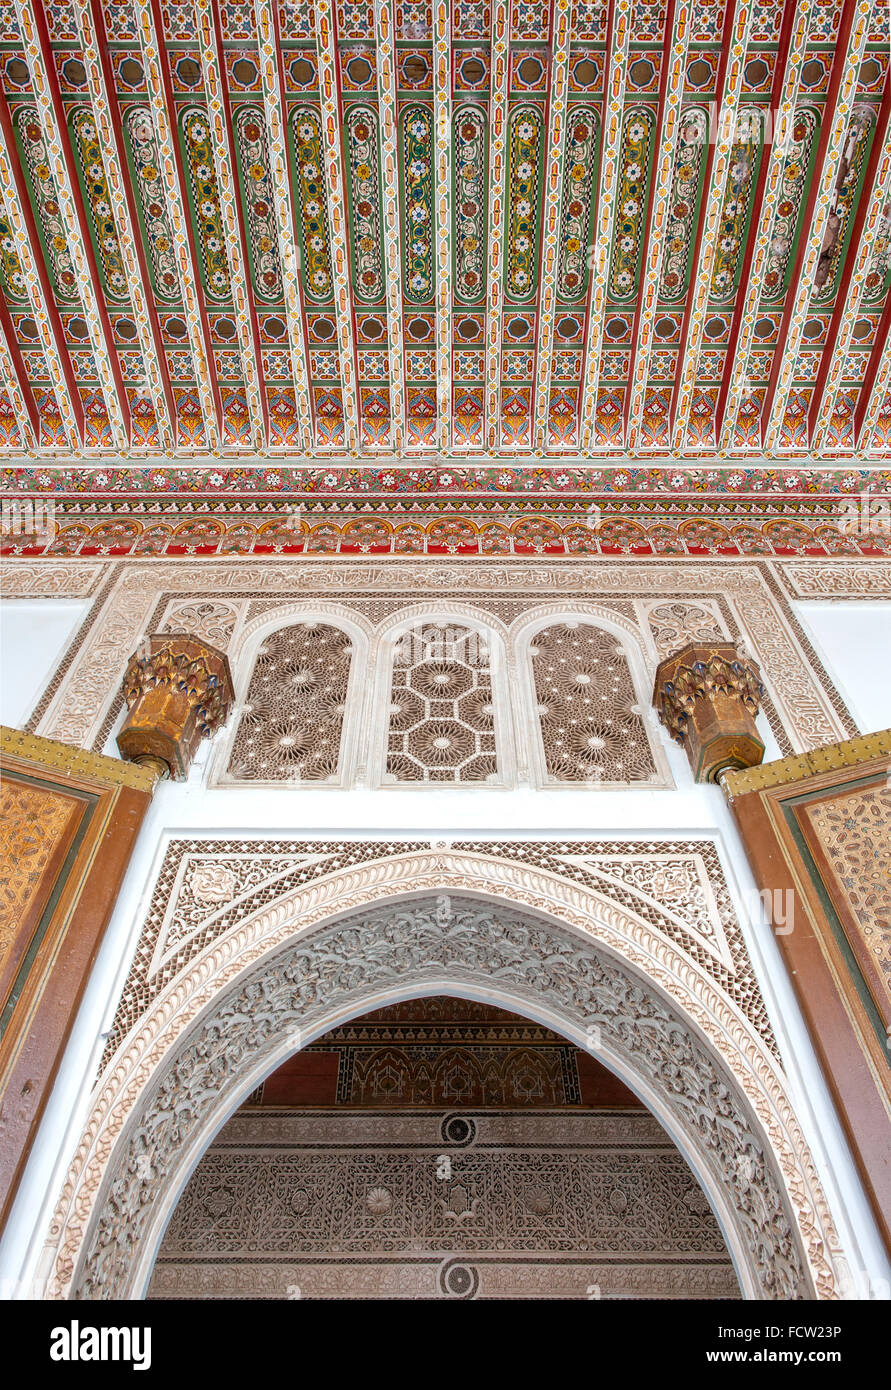 Detail der Einfahrt in eines der Zimmer in der Bahia Palast in Marrakesch, Marokko. Stockfoto